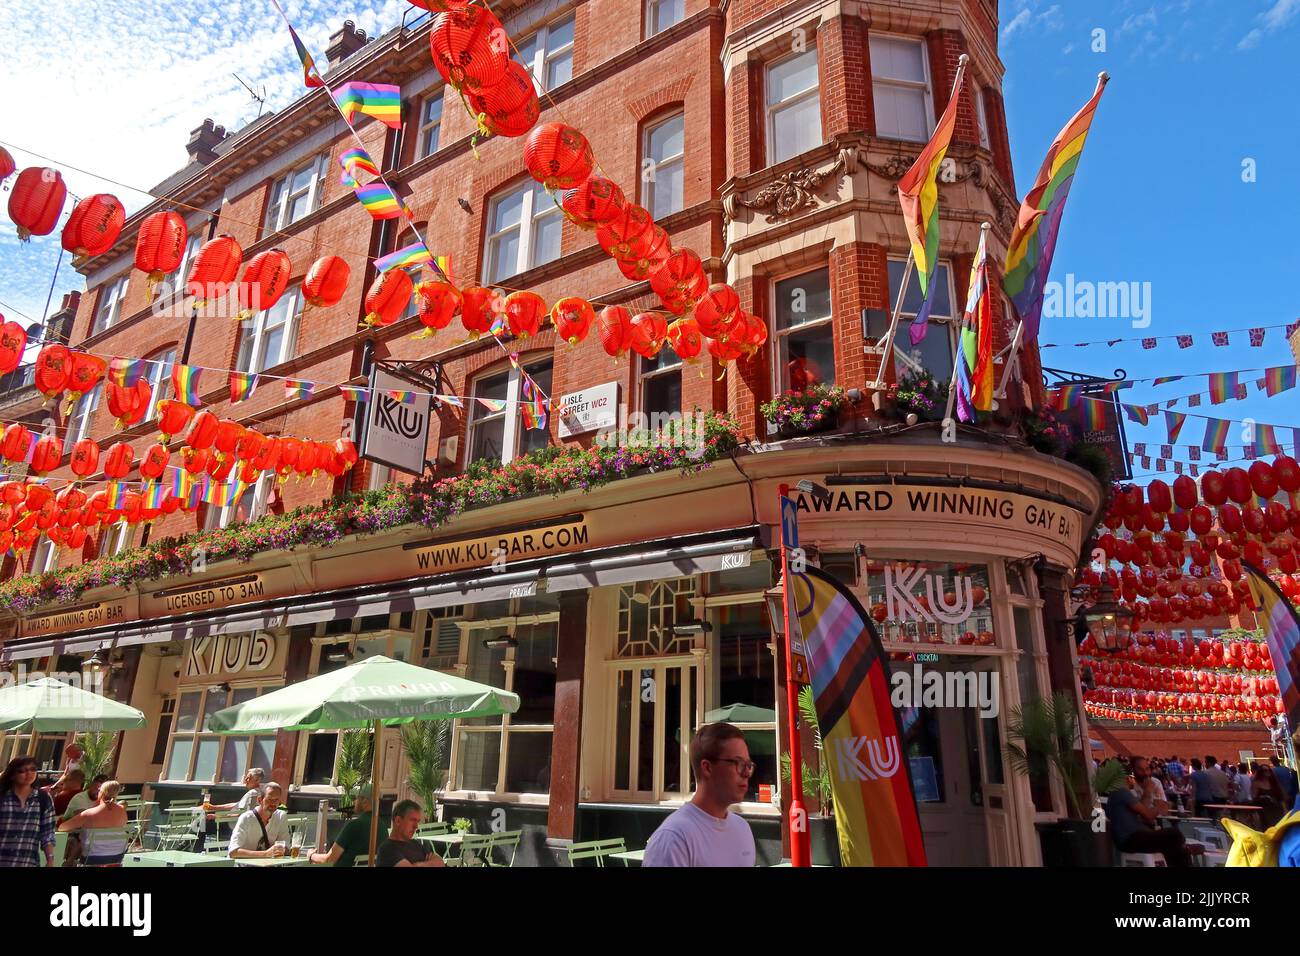 Ku-Bar primé gay Bar, lanternes rouges chinoises à Gerard Street, Soho, Londres, Angleterre, Royaume-Uni, W1D 5QD Banque D'Images